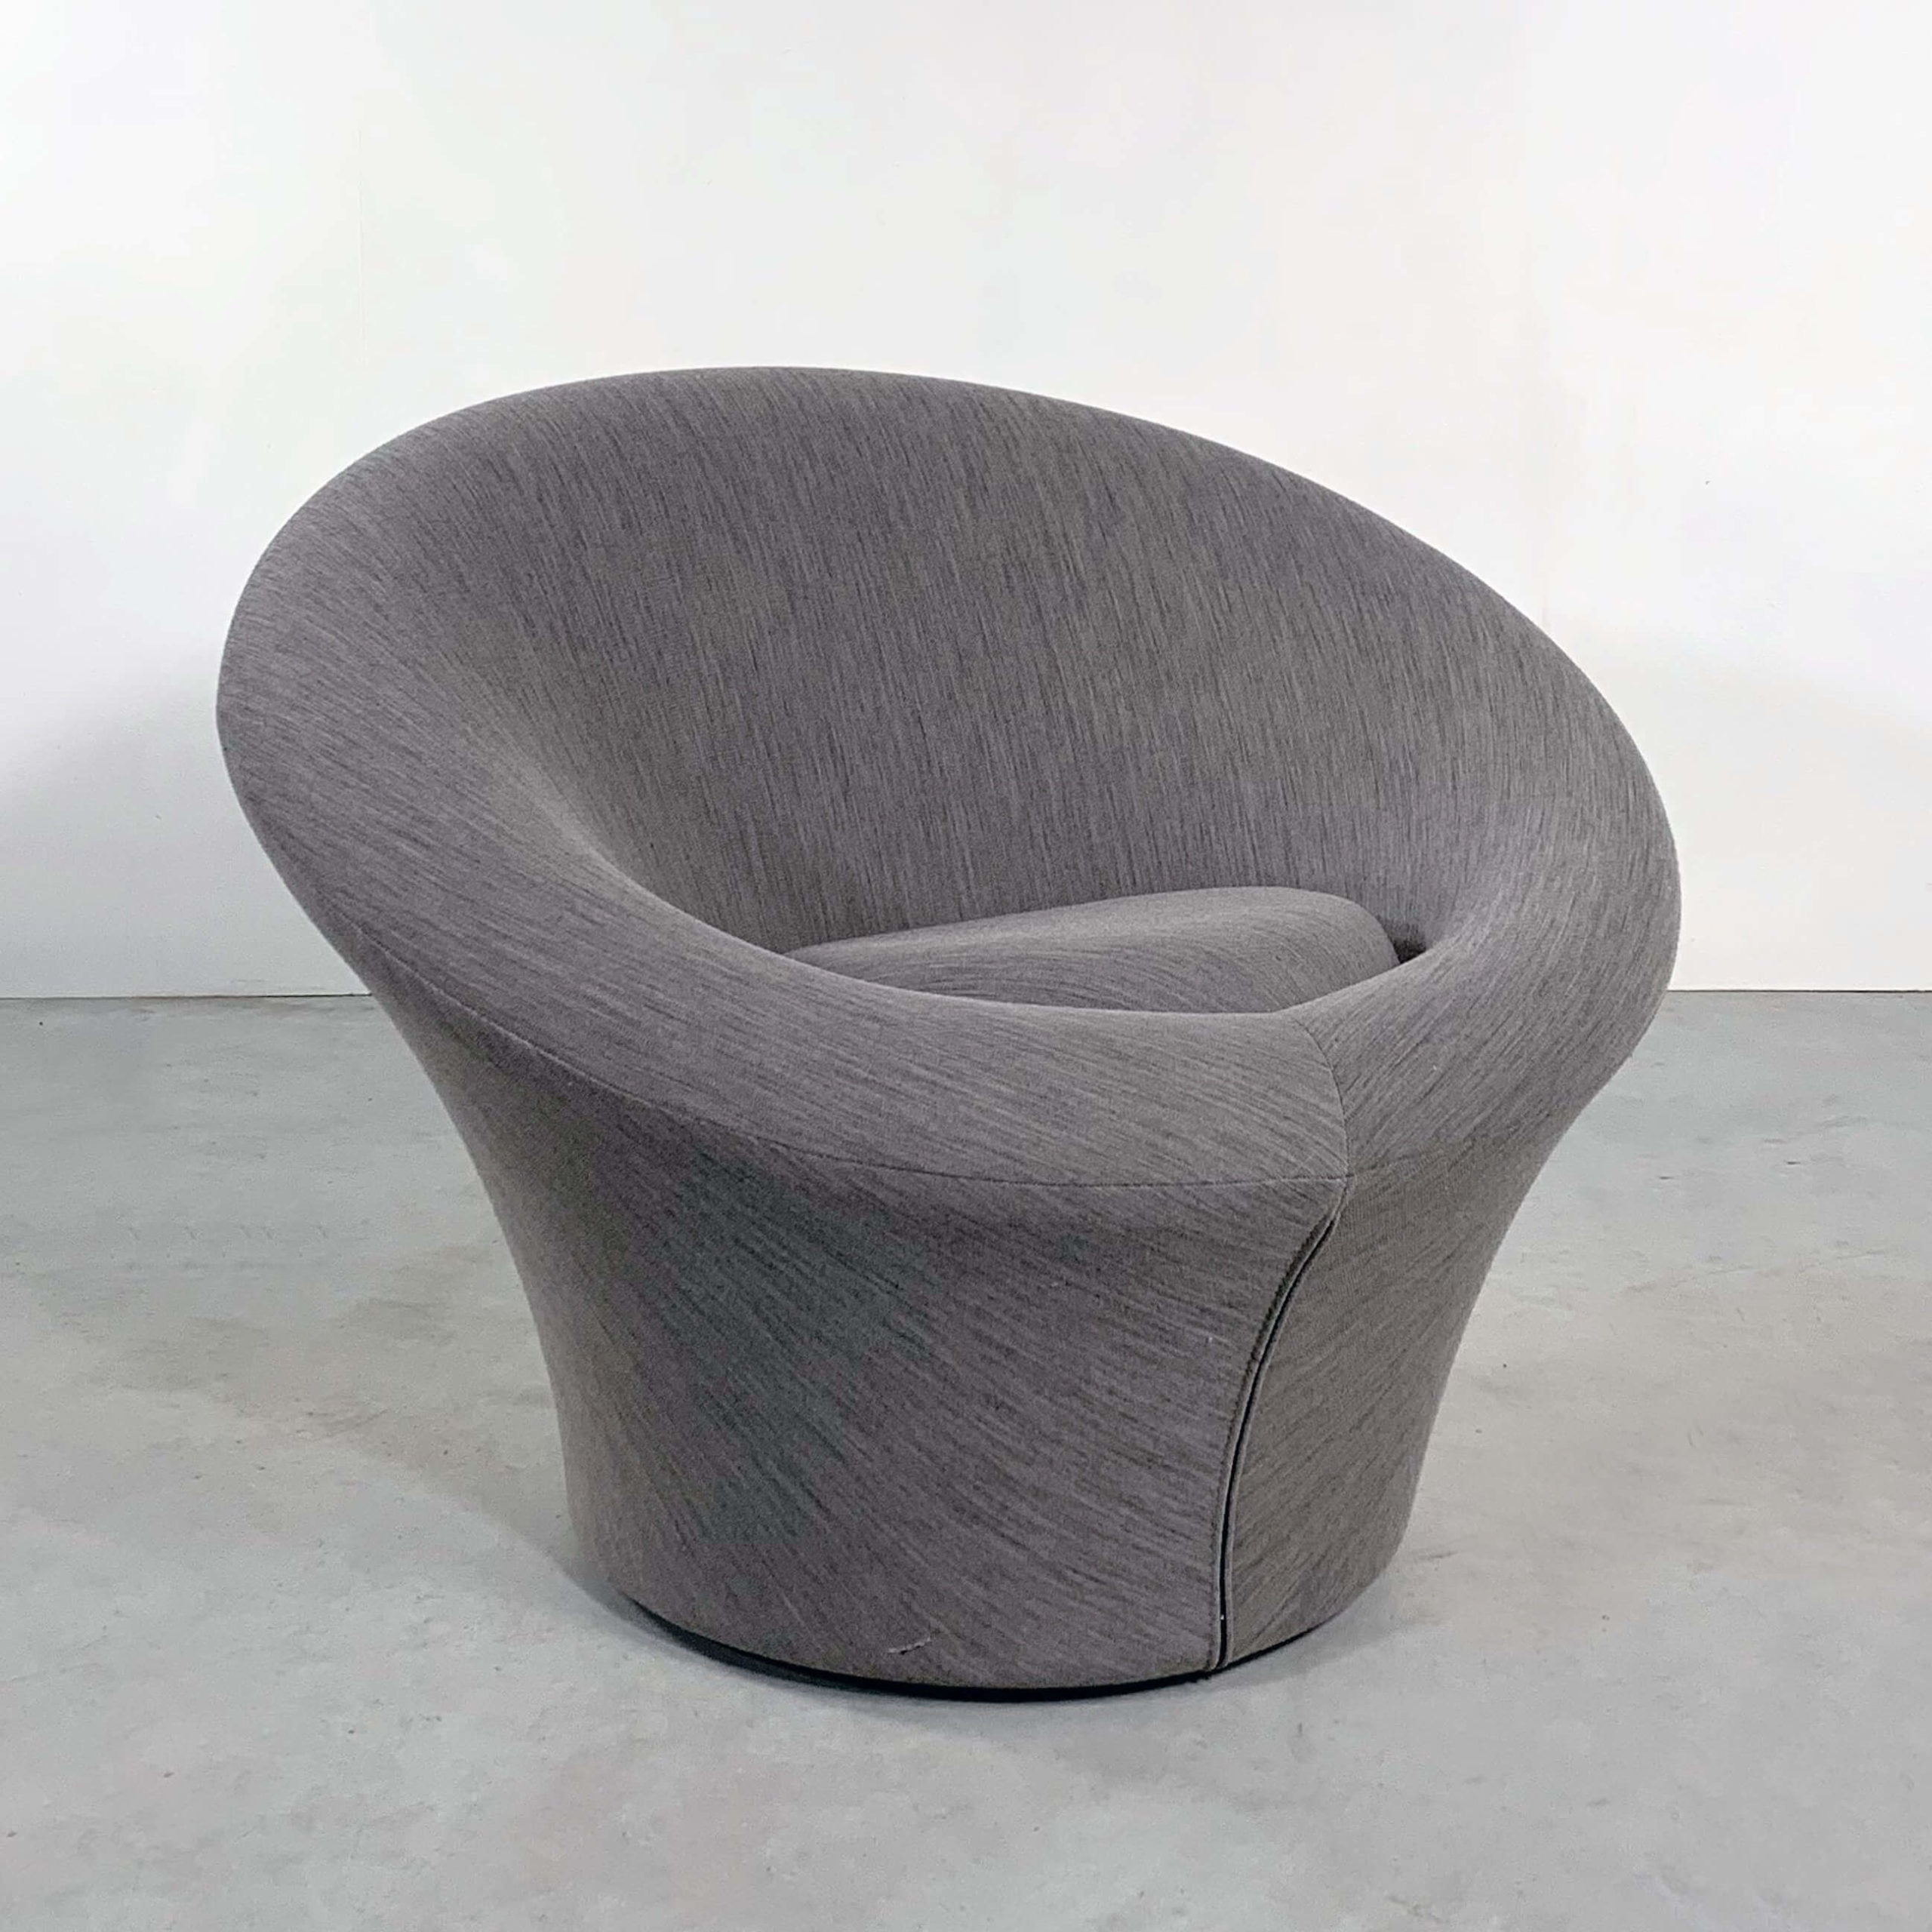 The Mushroom armchair (1)